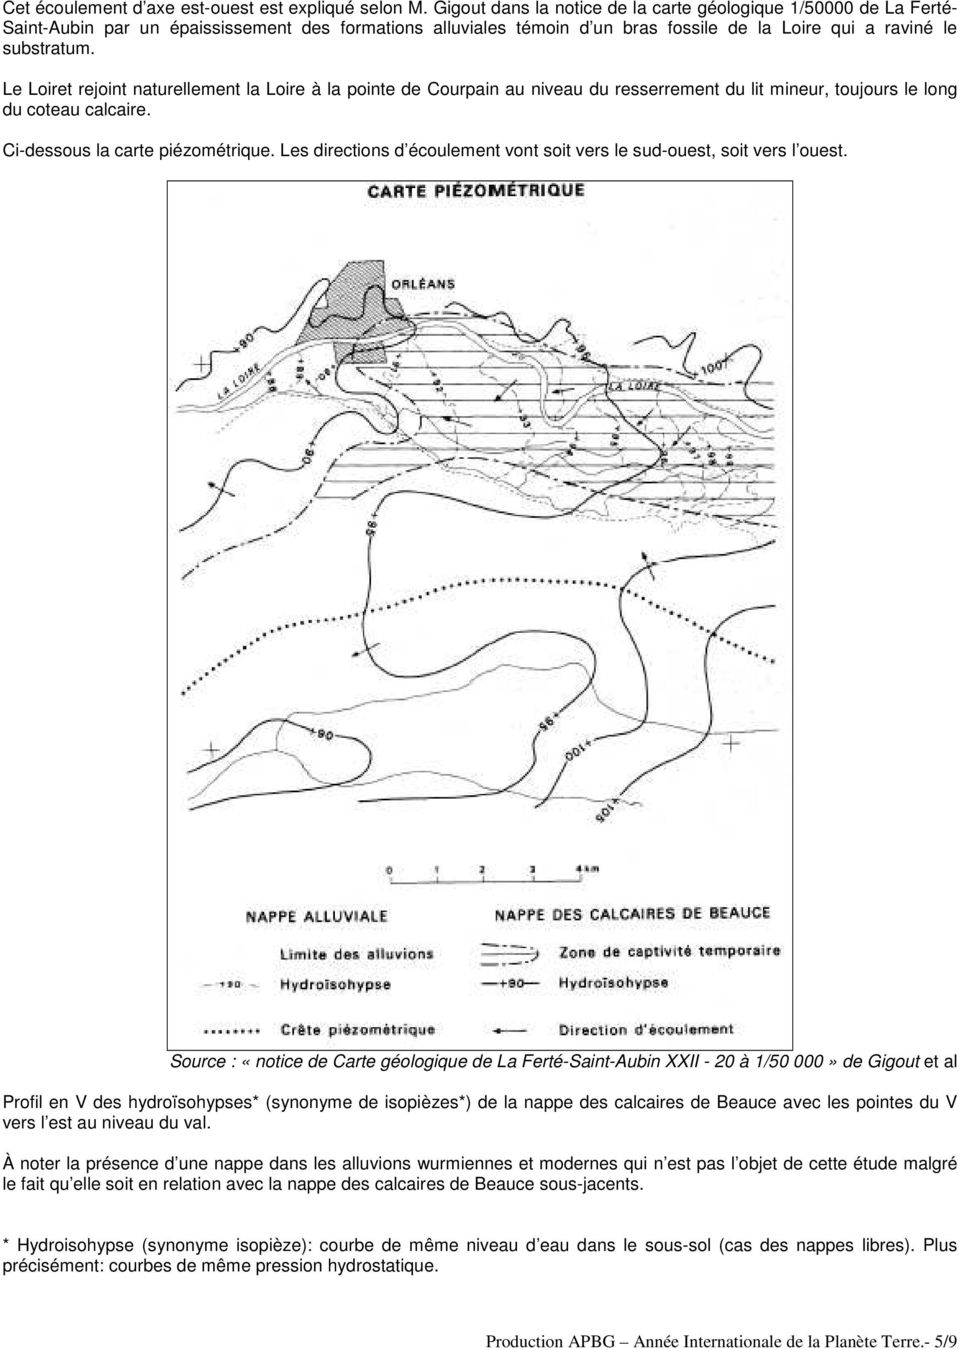 Le Loiret rejoint naturellement la Loire à la pointe de Courpain au niveau du resserrement du lit mineur, toujours le long du coteau calcaire. Ci-dessous la carte piézométrique.